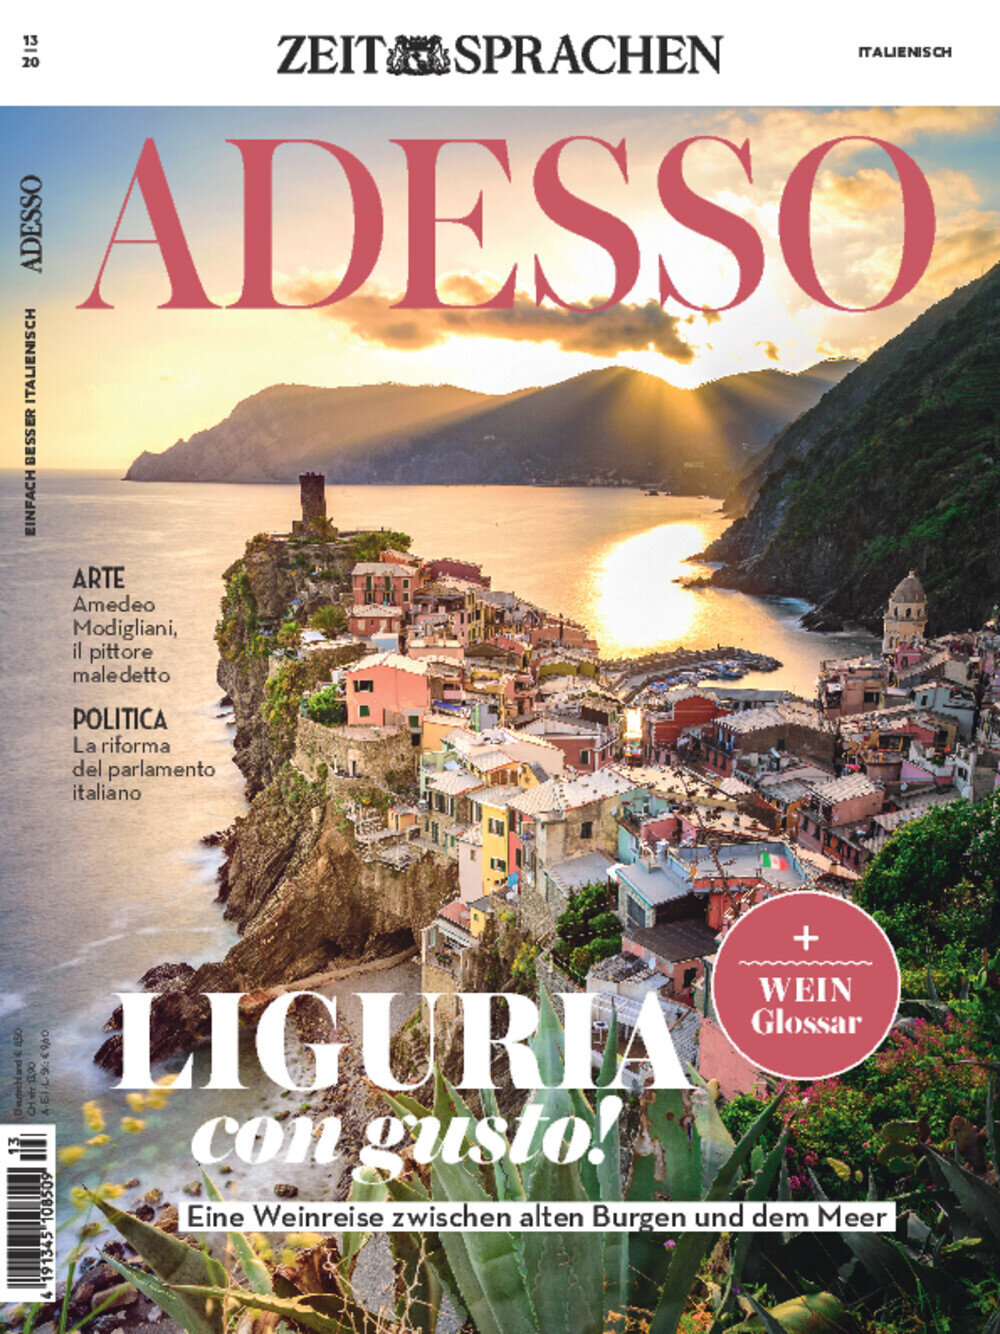 ADESSO eMagazine 13/2020